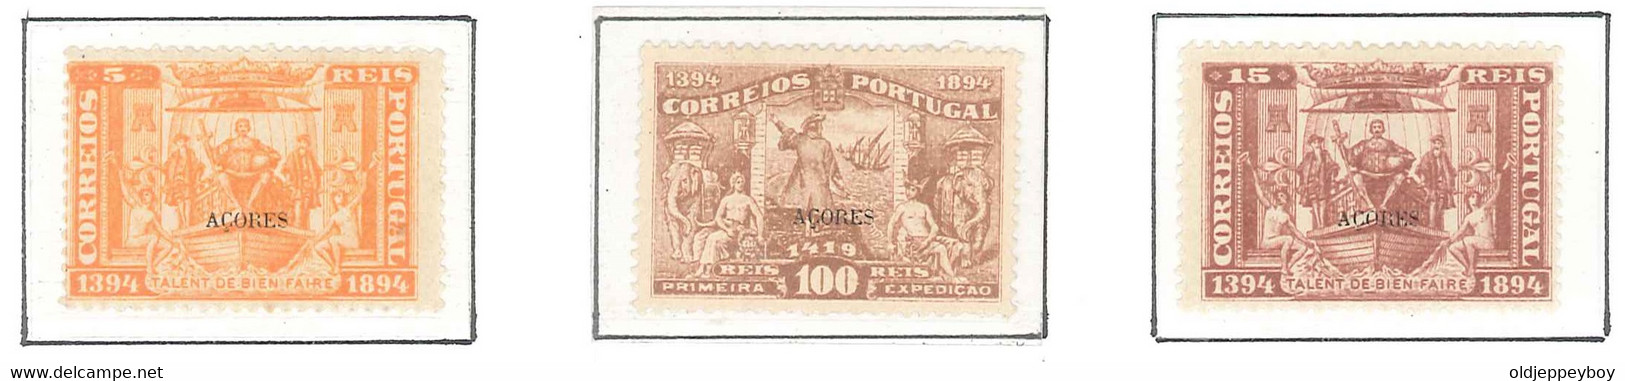 1894 Portugal  5º Centenário Nascimento Infante D. Henrique MH/MLH/MNH ORIGINAL GUM 5, 15, 100 Rs AZORES AÇORES  OVPT - Onderzoekers